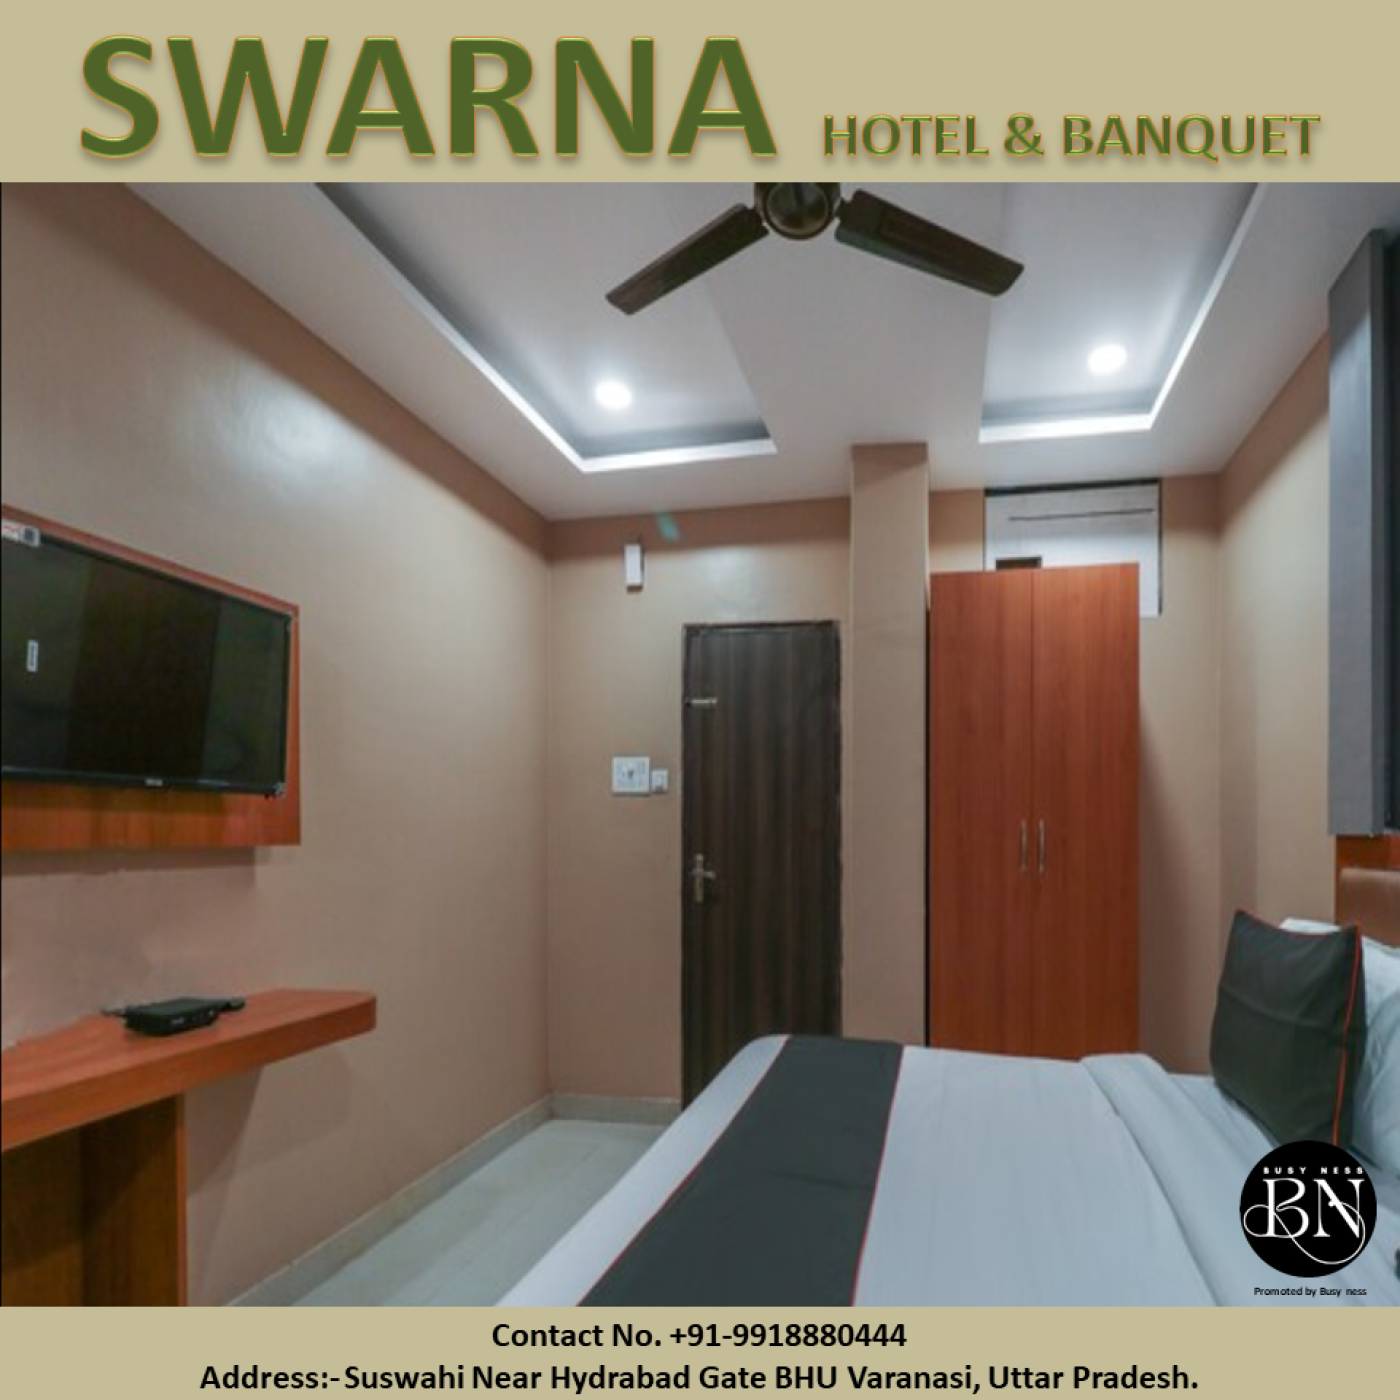 Swarna Banquet & Hotel Suswahi, Varanasi